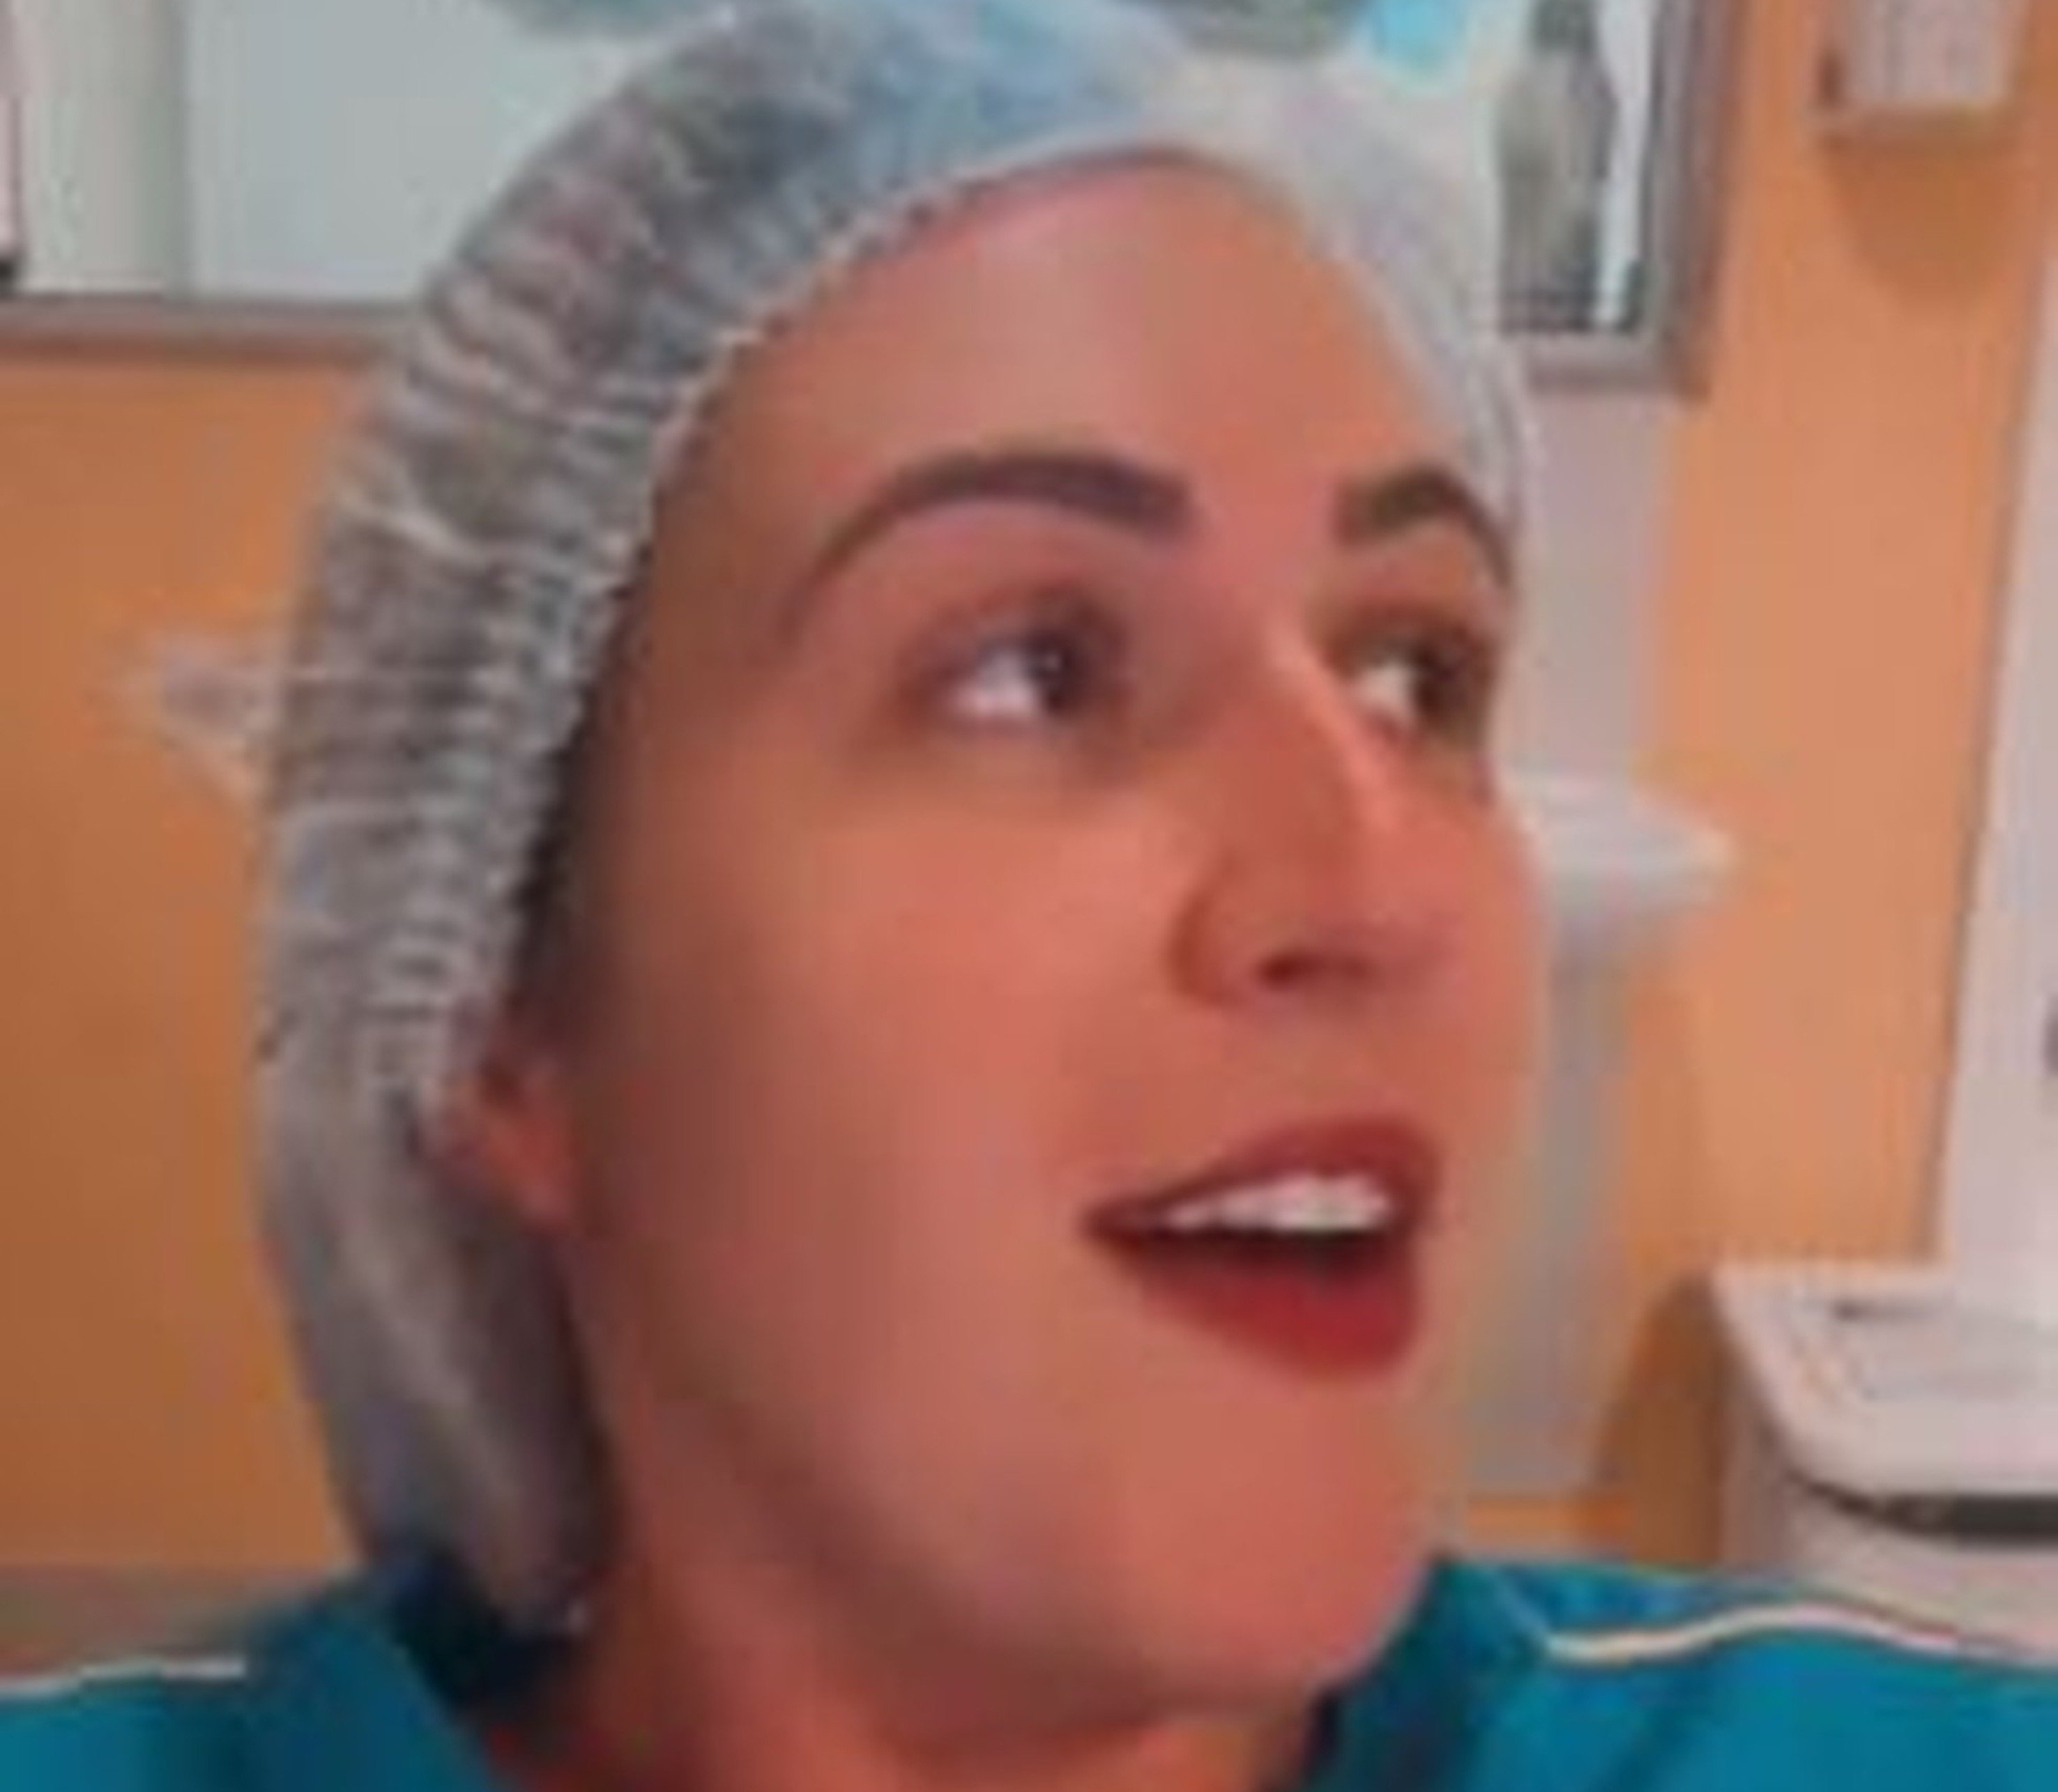 Órgão instaurou procedimento nesta segunda-feira (25) para apurar a conduta de Nathanna Ceschim, que publicou vídeos sem máscara no local de trabalho e ironizando vacina